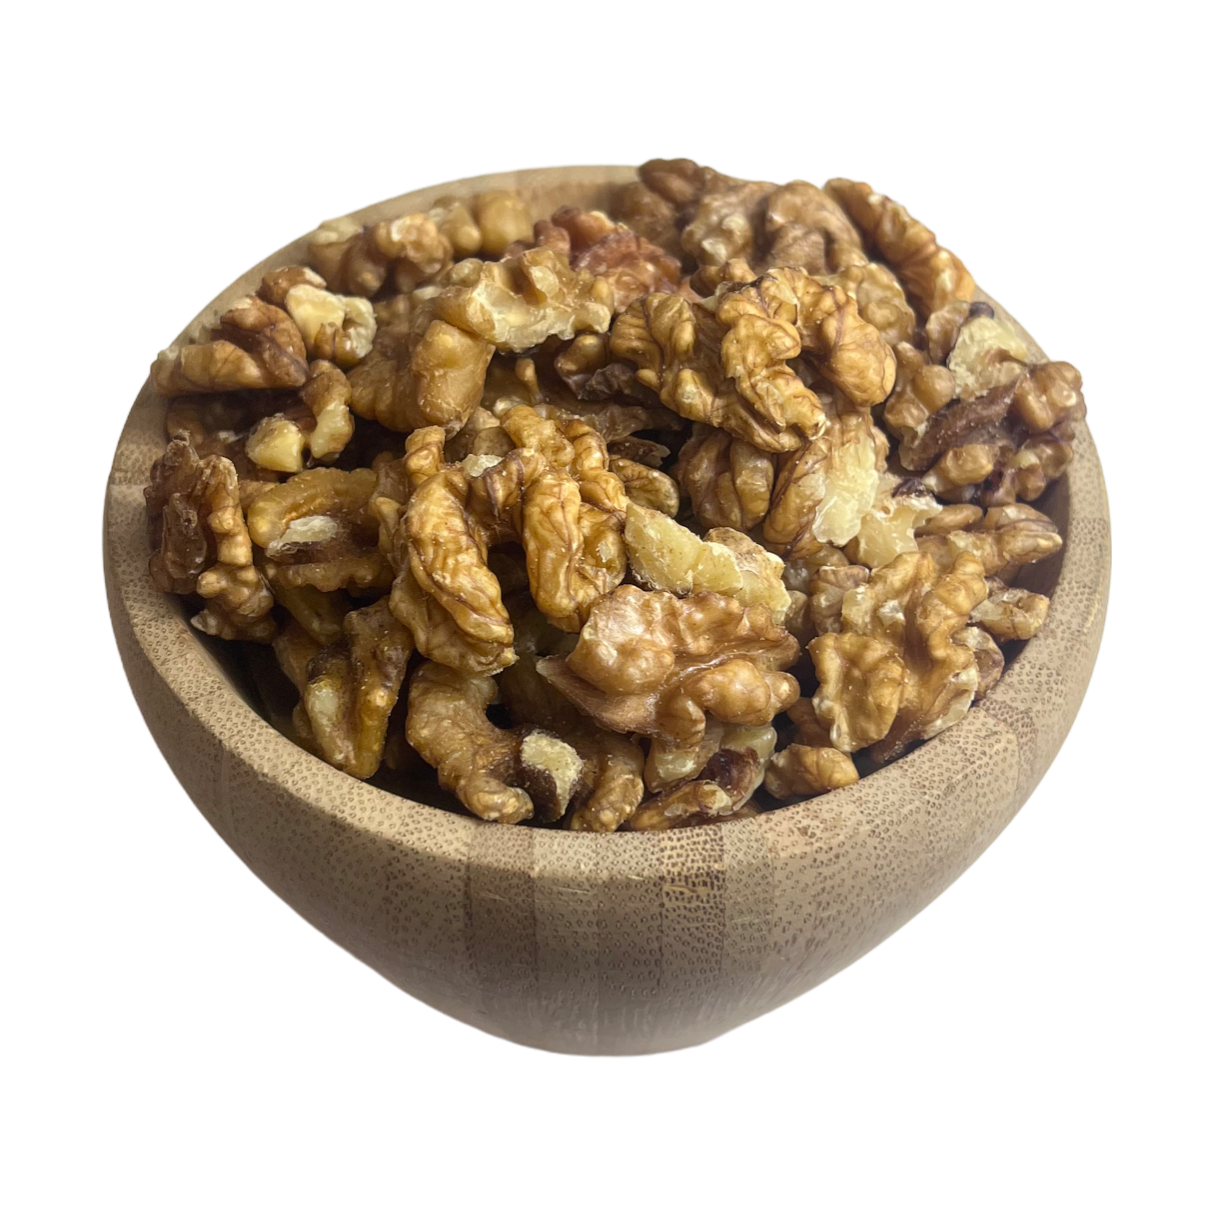 Cerneaux de noix - Laur' En Vrac - Épicerie vrac, locale, zéro déchet